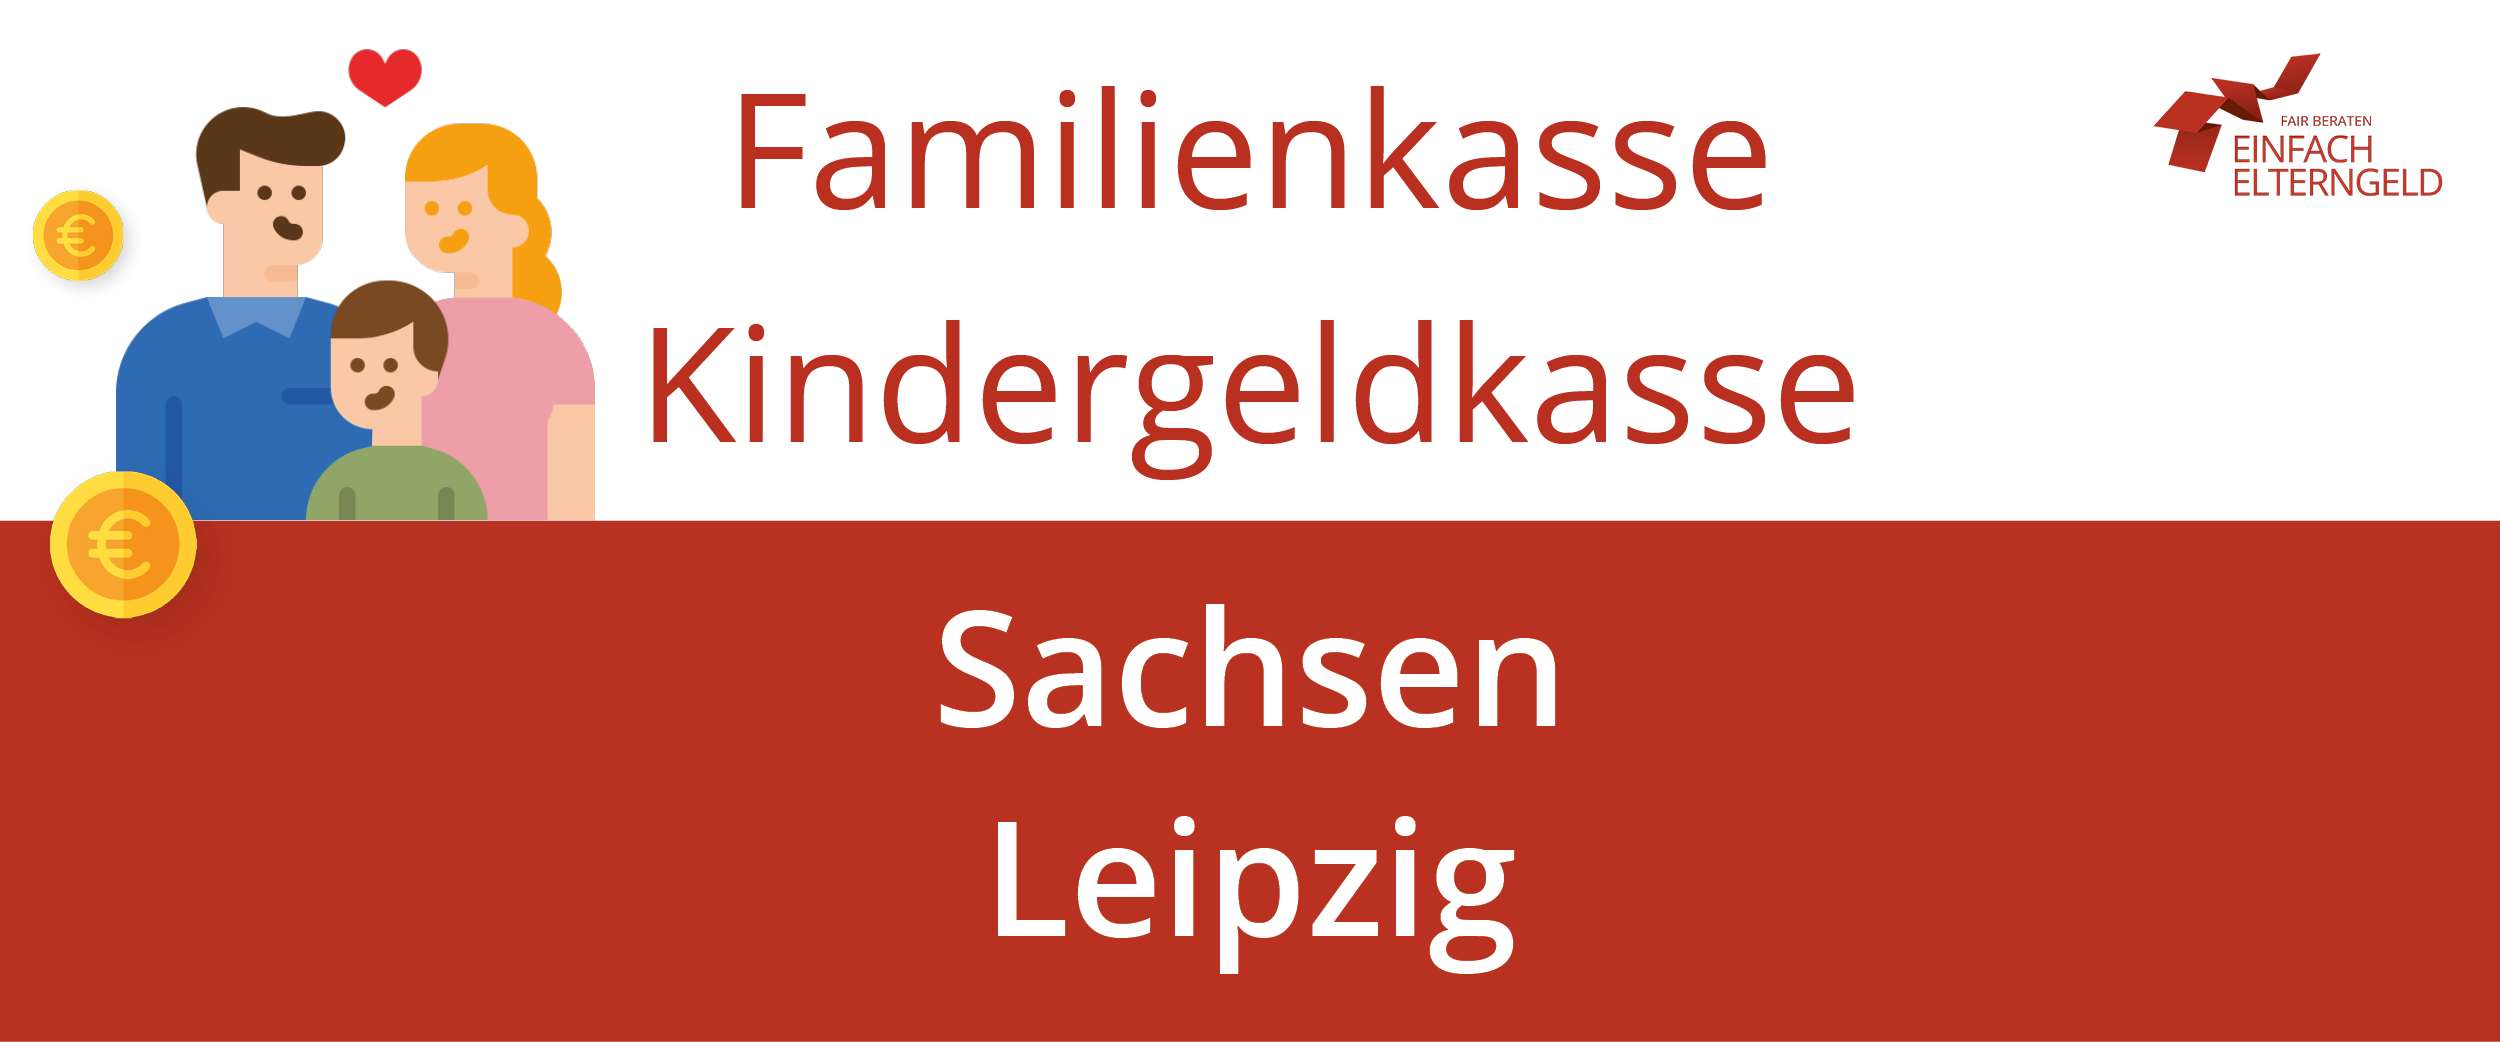 Familienkasse Kindergeldkasse Sachsen Leipzig - So erreichen Sie Ihre Familienkasse.